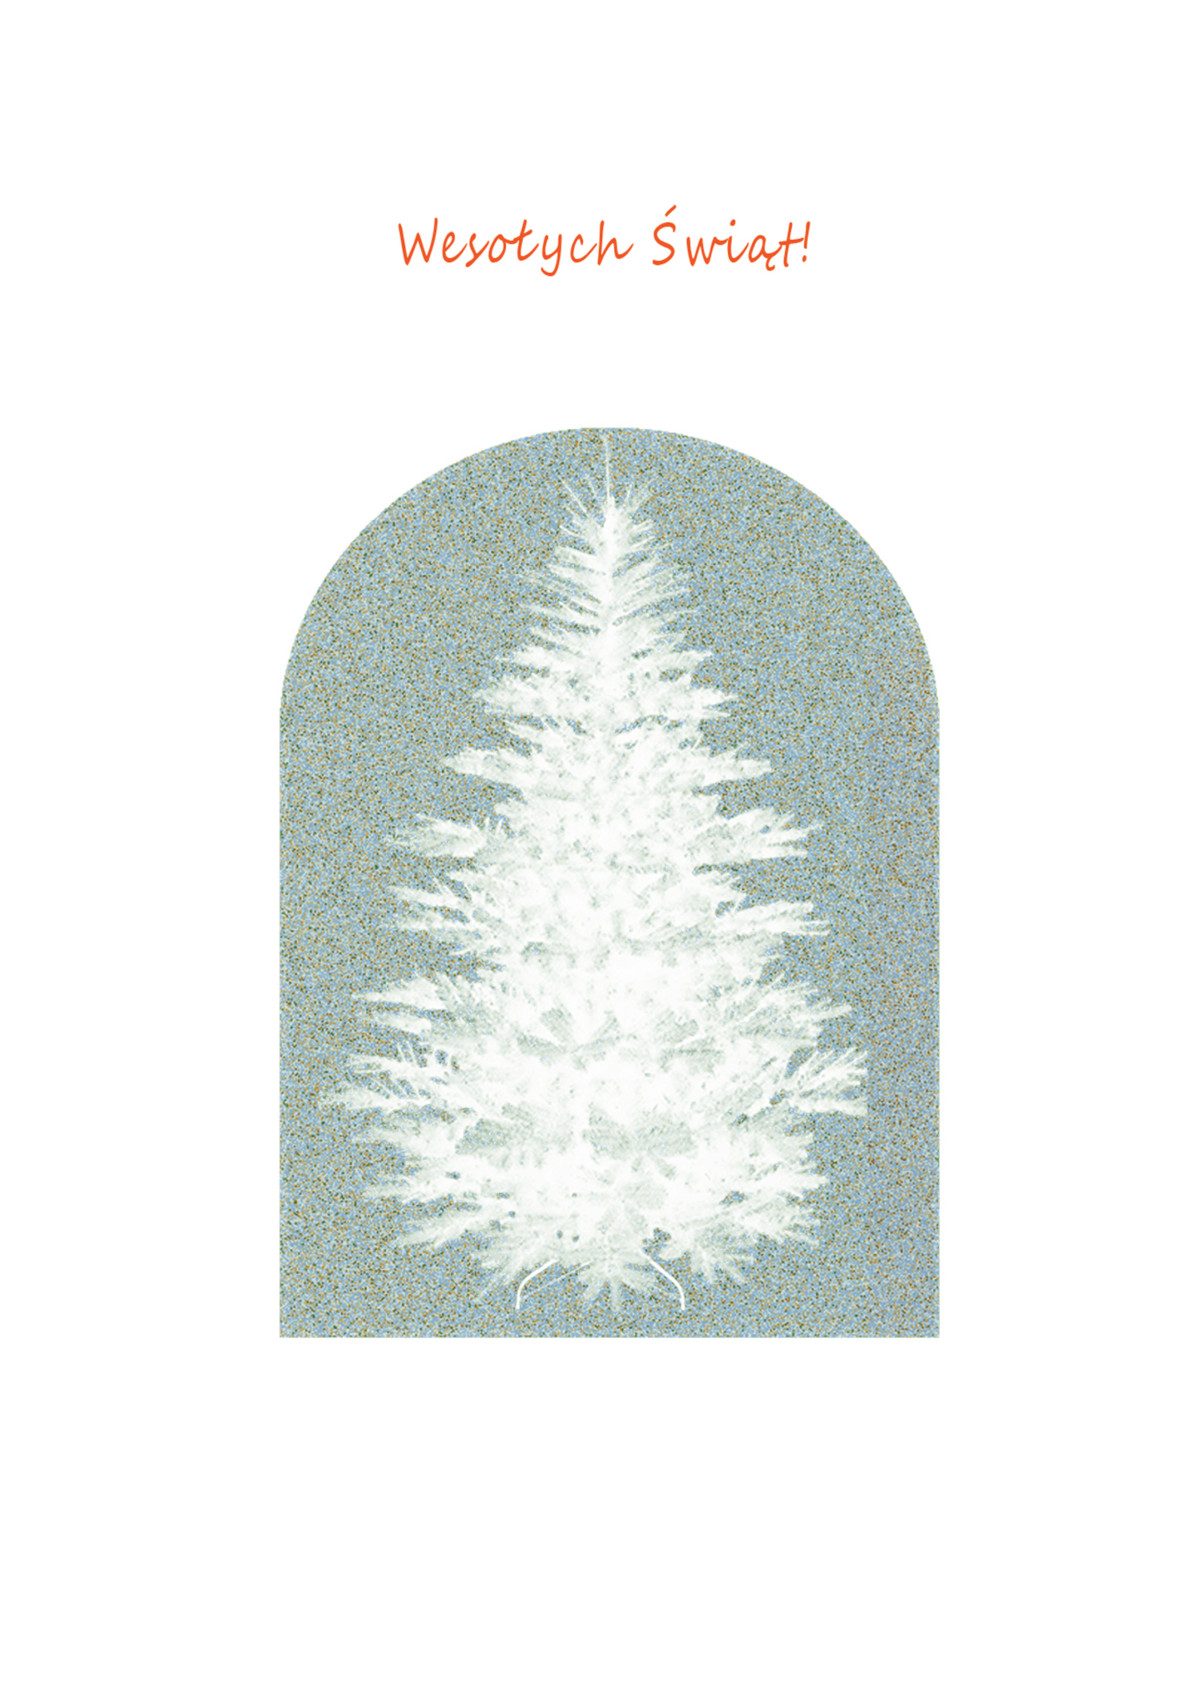 plakat kartki świątecznej, na białym tle czerwony napis wesołych świąt, pod spodem na tle szaroniebieskim grafika białej choink